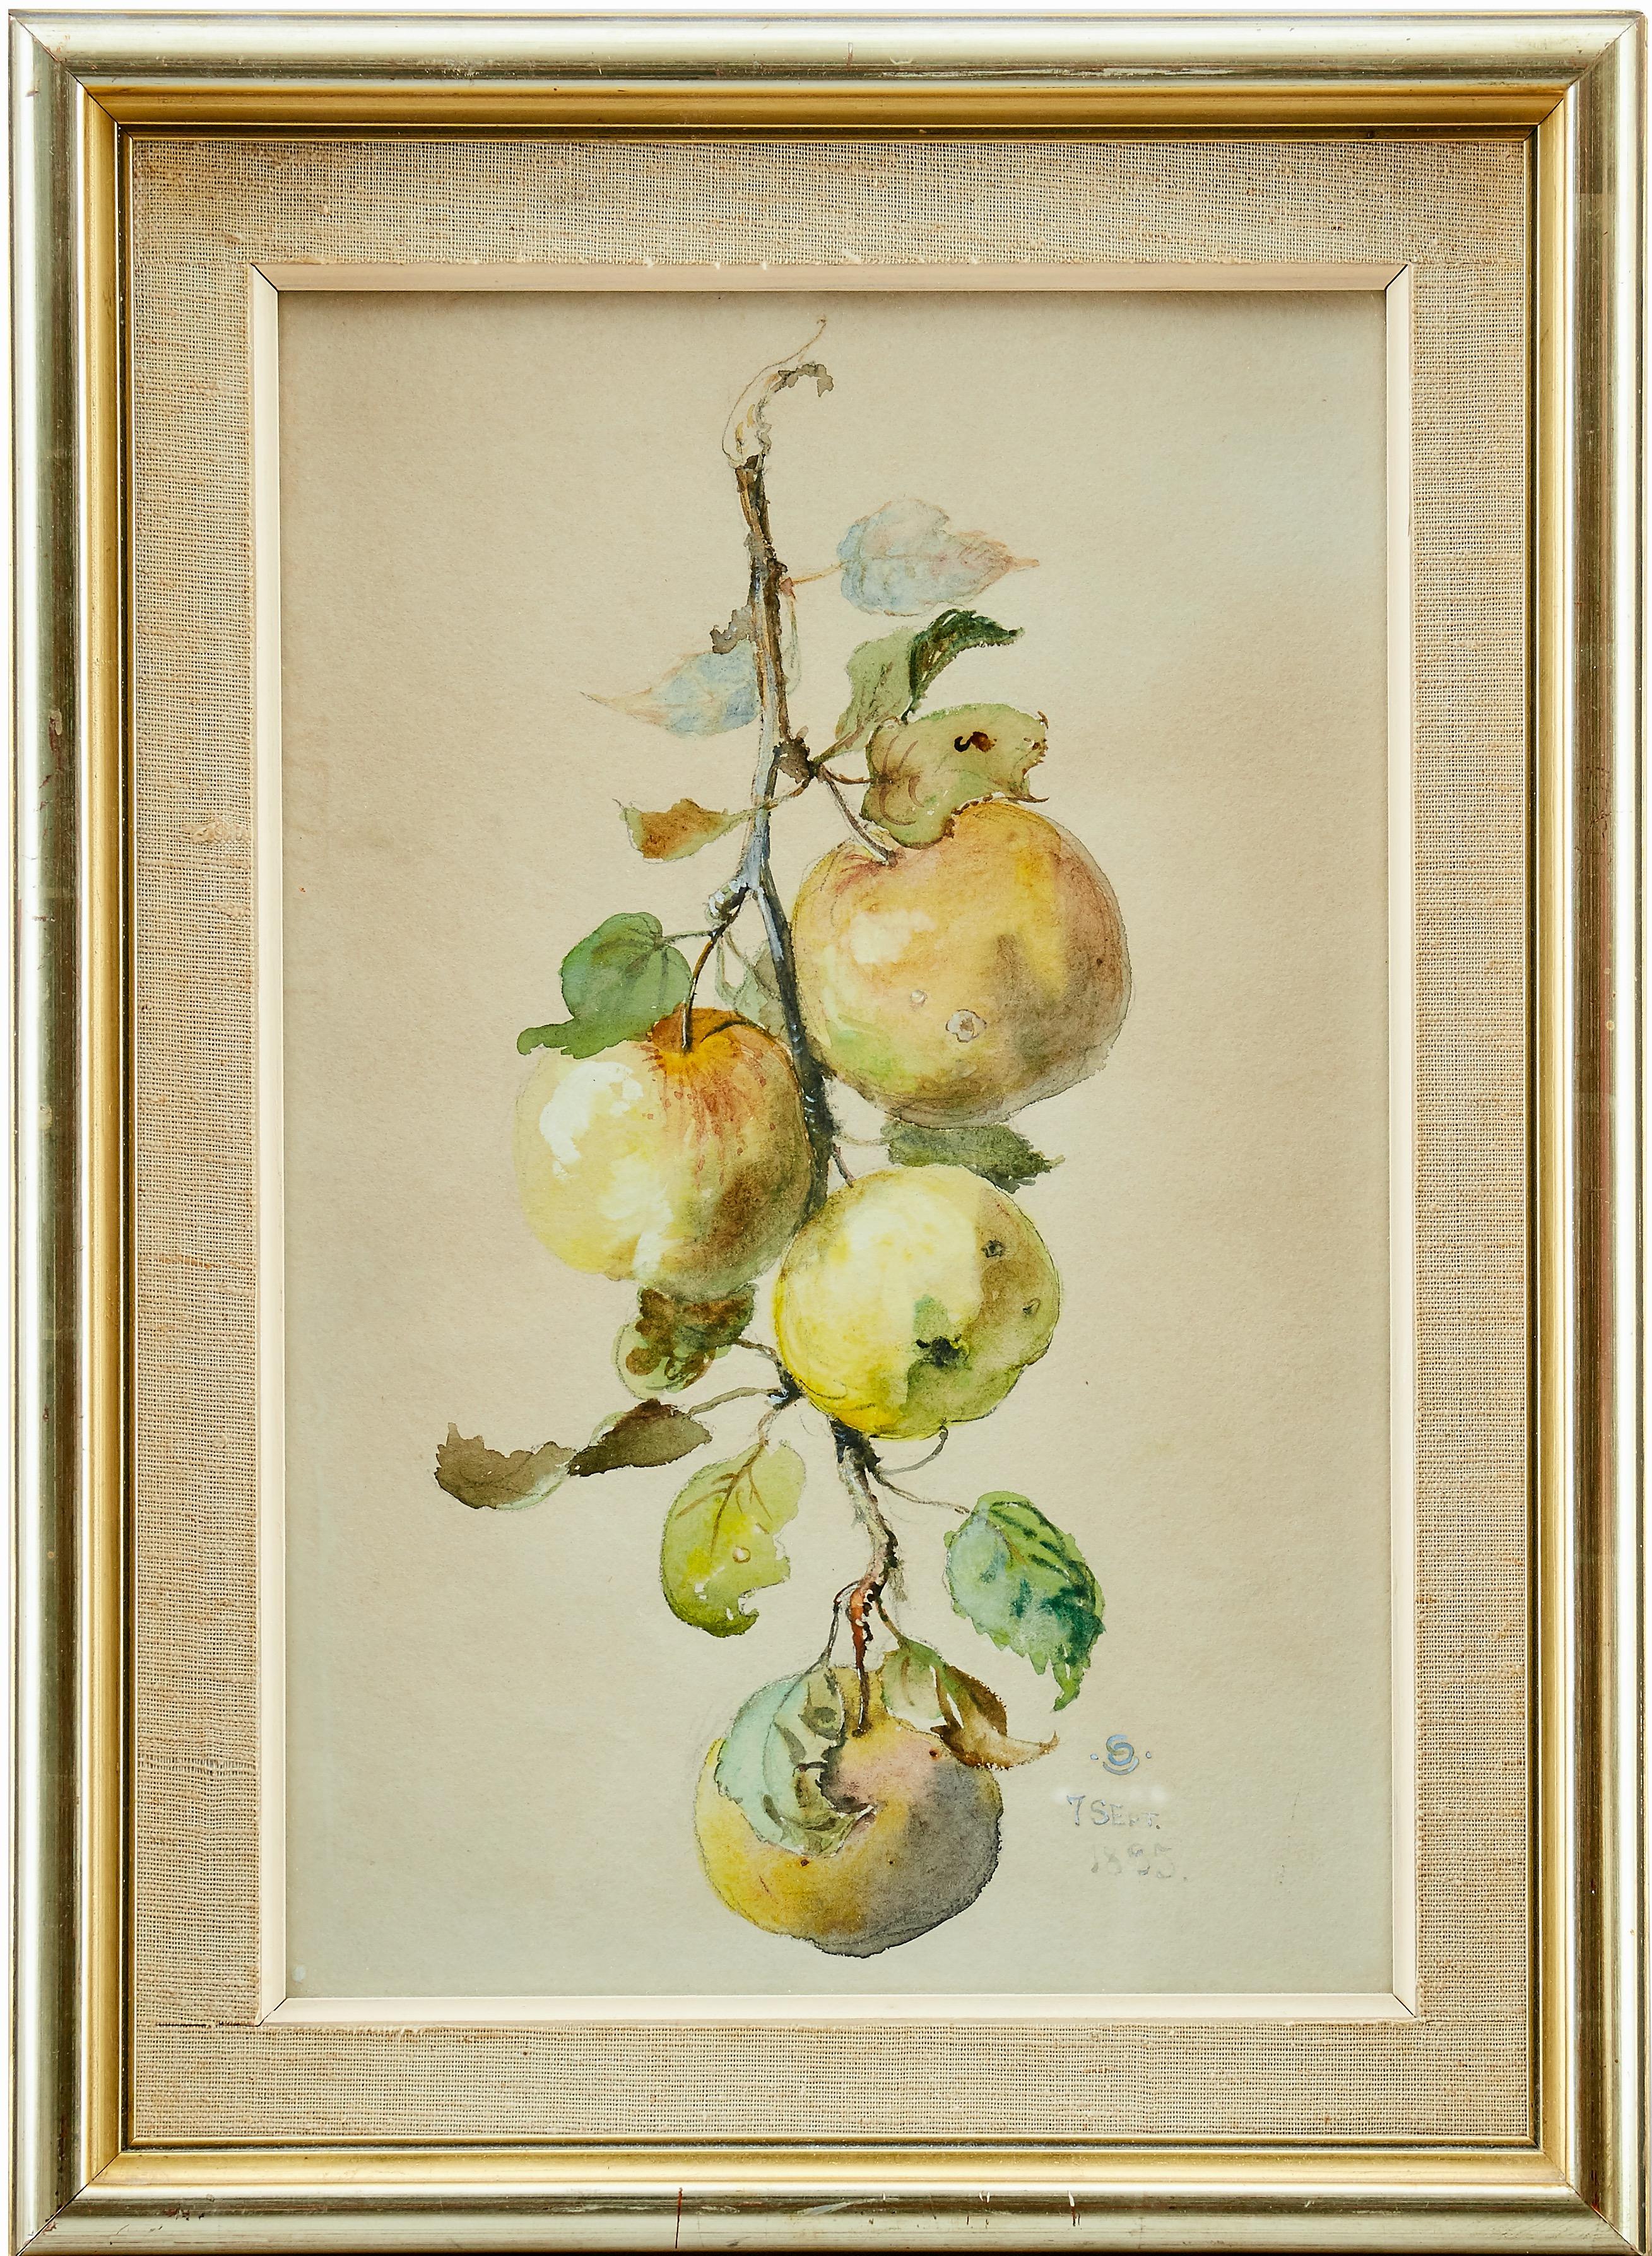 Ein schön gemalter Branch mit grünen und rötlichen Äpfeln von Otto Strandman (1871-1960). Signiert mit Monogramm "OS" und datiert "7 SEPT. 1895". Aquarell- und Gouache-Gemälde auf Papier. 

Otto Strandman erhielt seine Ausbildung an der Hochschule